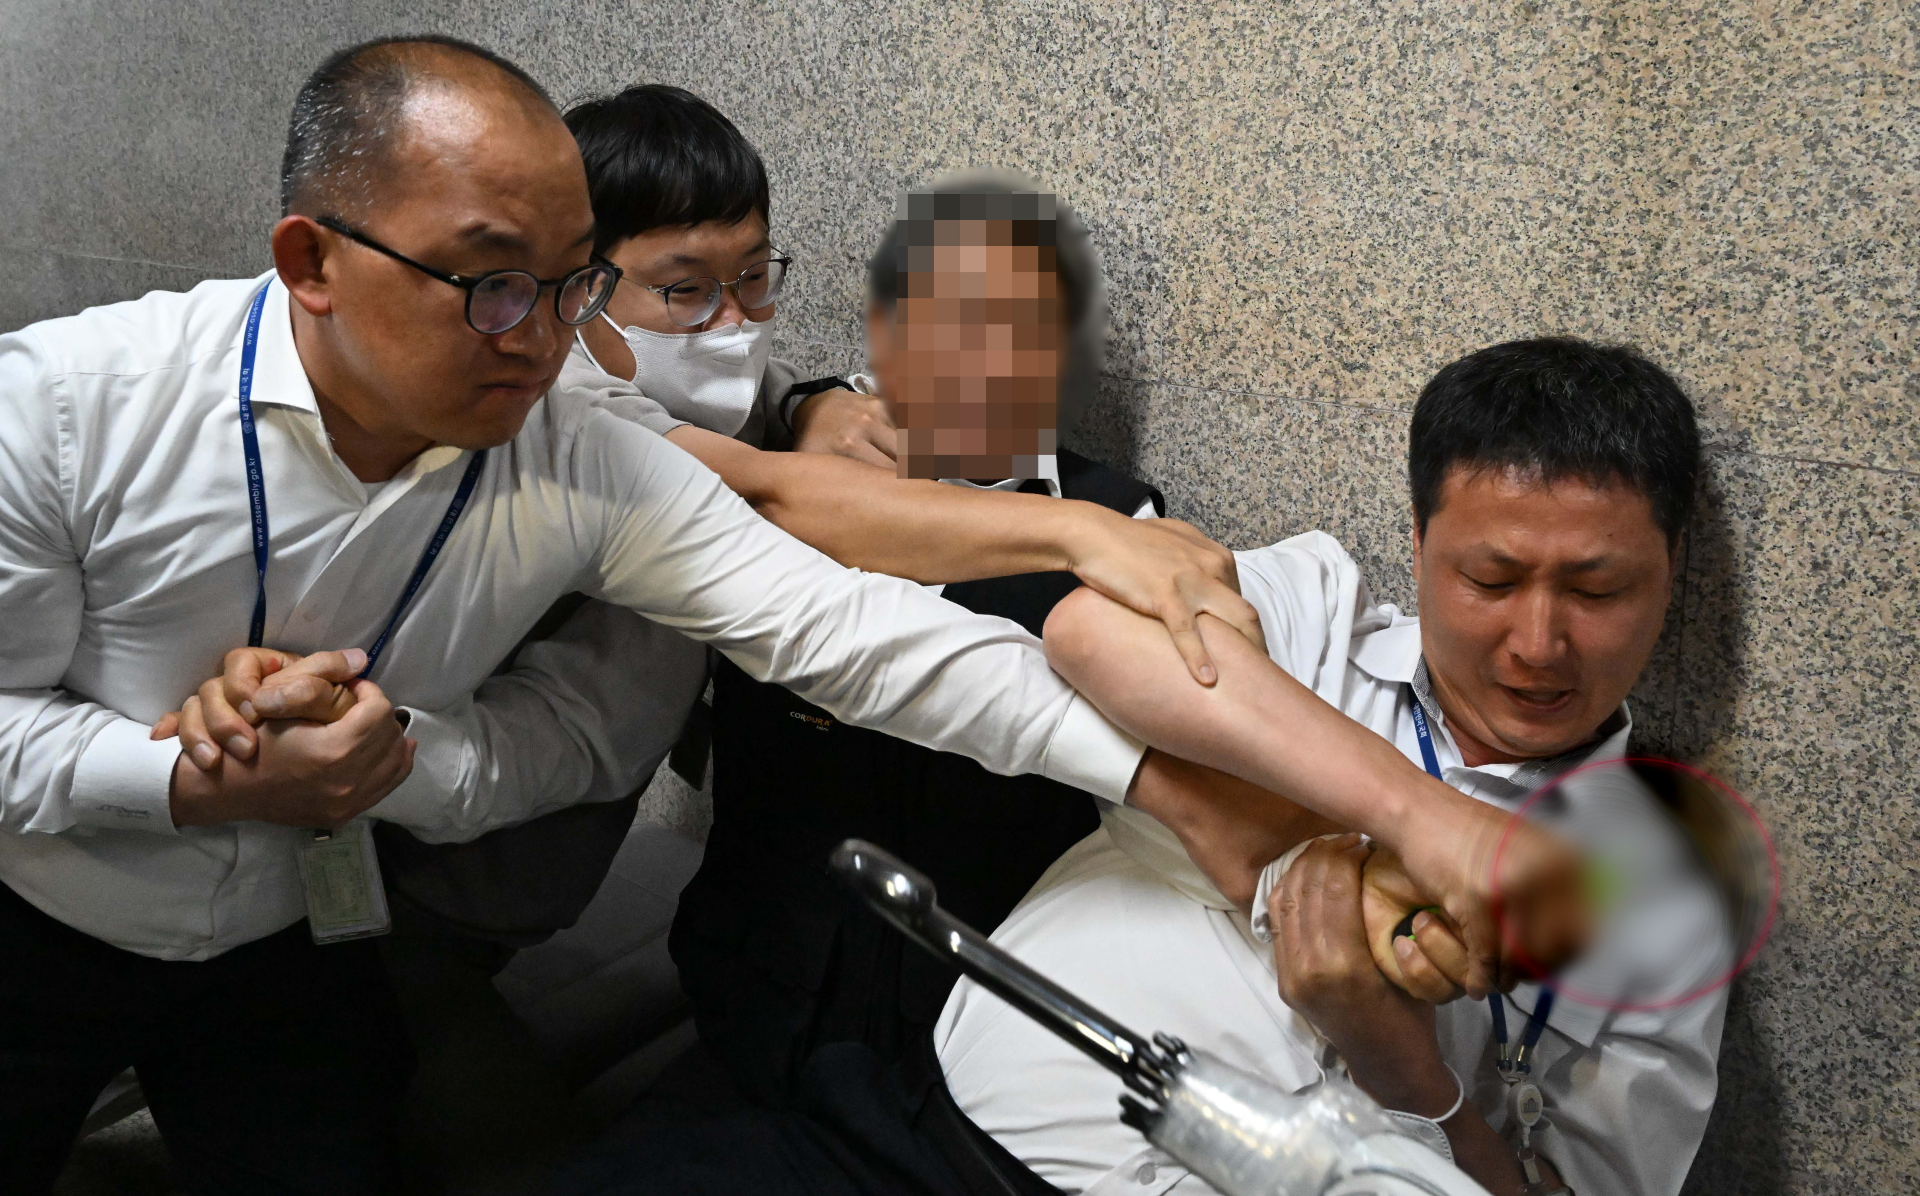 오늘 오전, 더불어민주당 당 대표실 앞에서 한 남성이 흉기로 자해 소동을 벌이다 제압당하는 모습